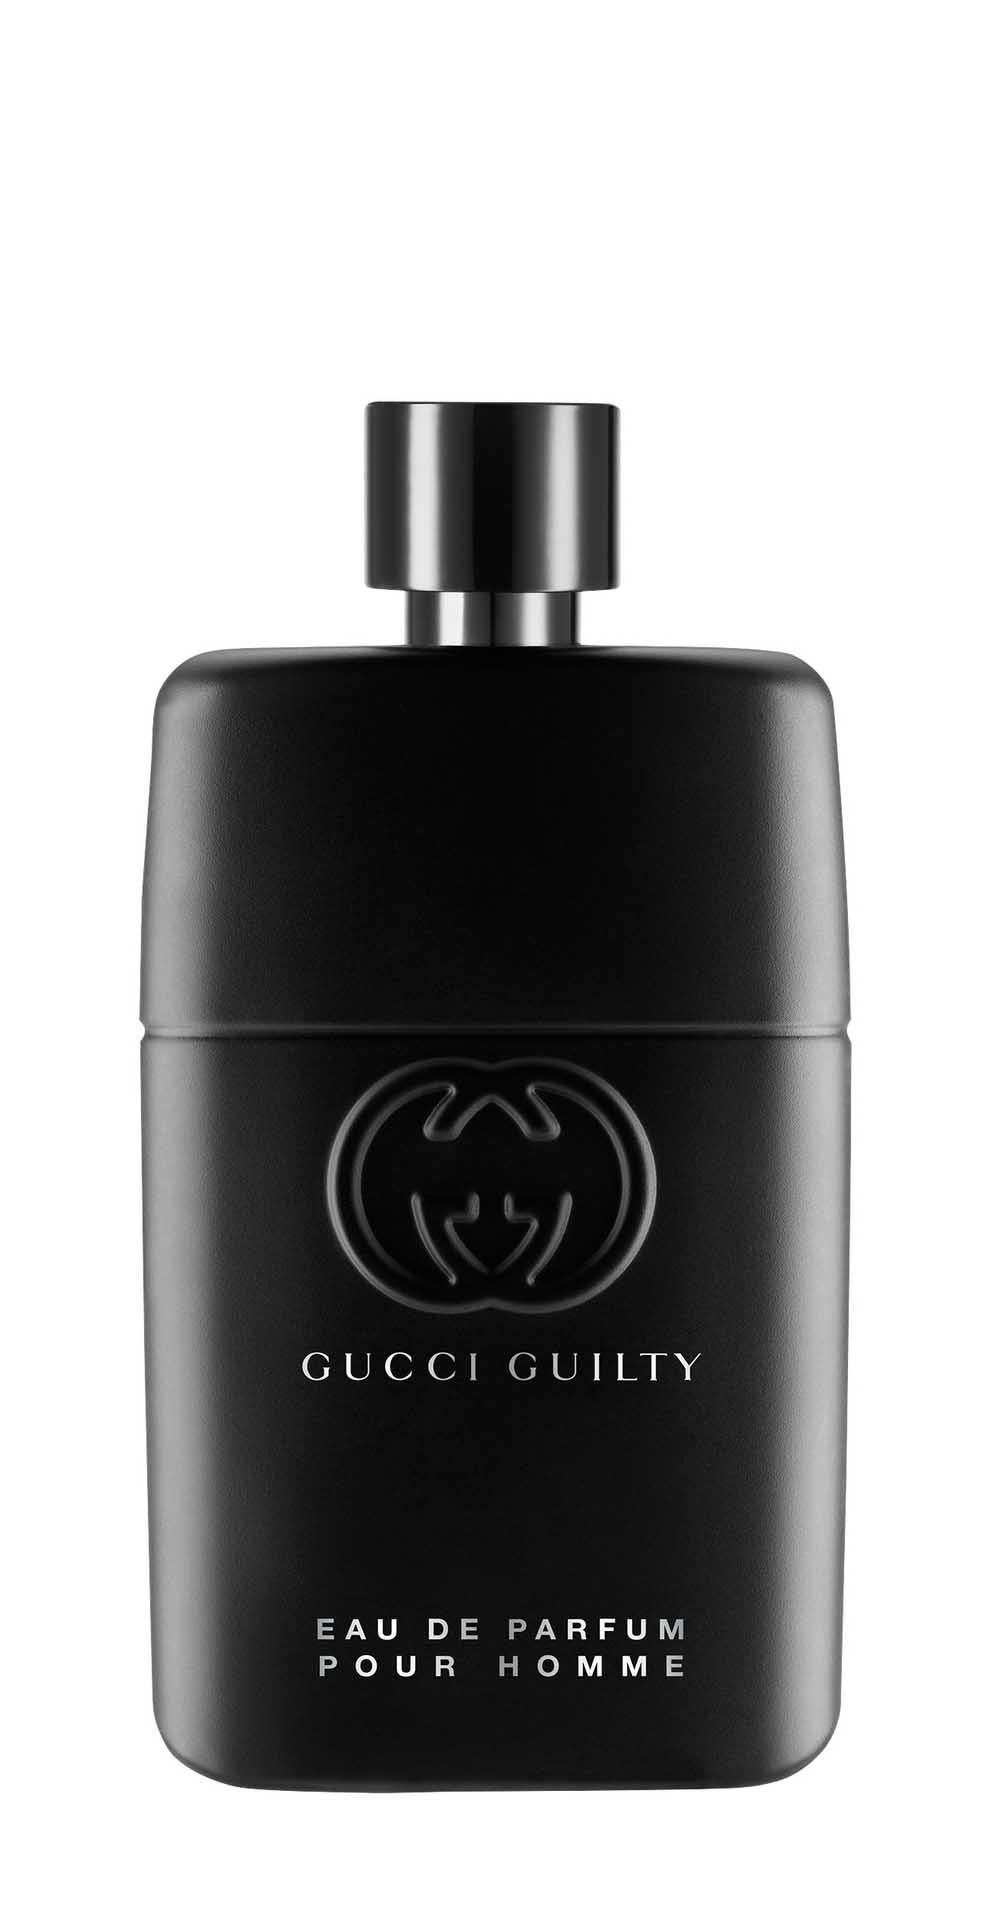 Парфюмерная вода Gucci Guilty Pour Homme Eau de Parfum для мужчин, 90 мл gucci guilty eau